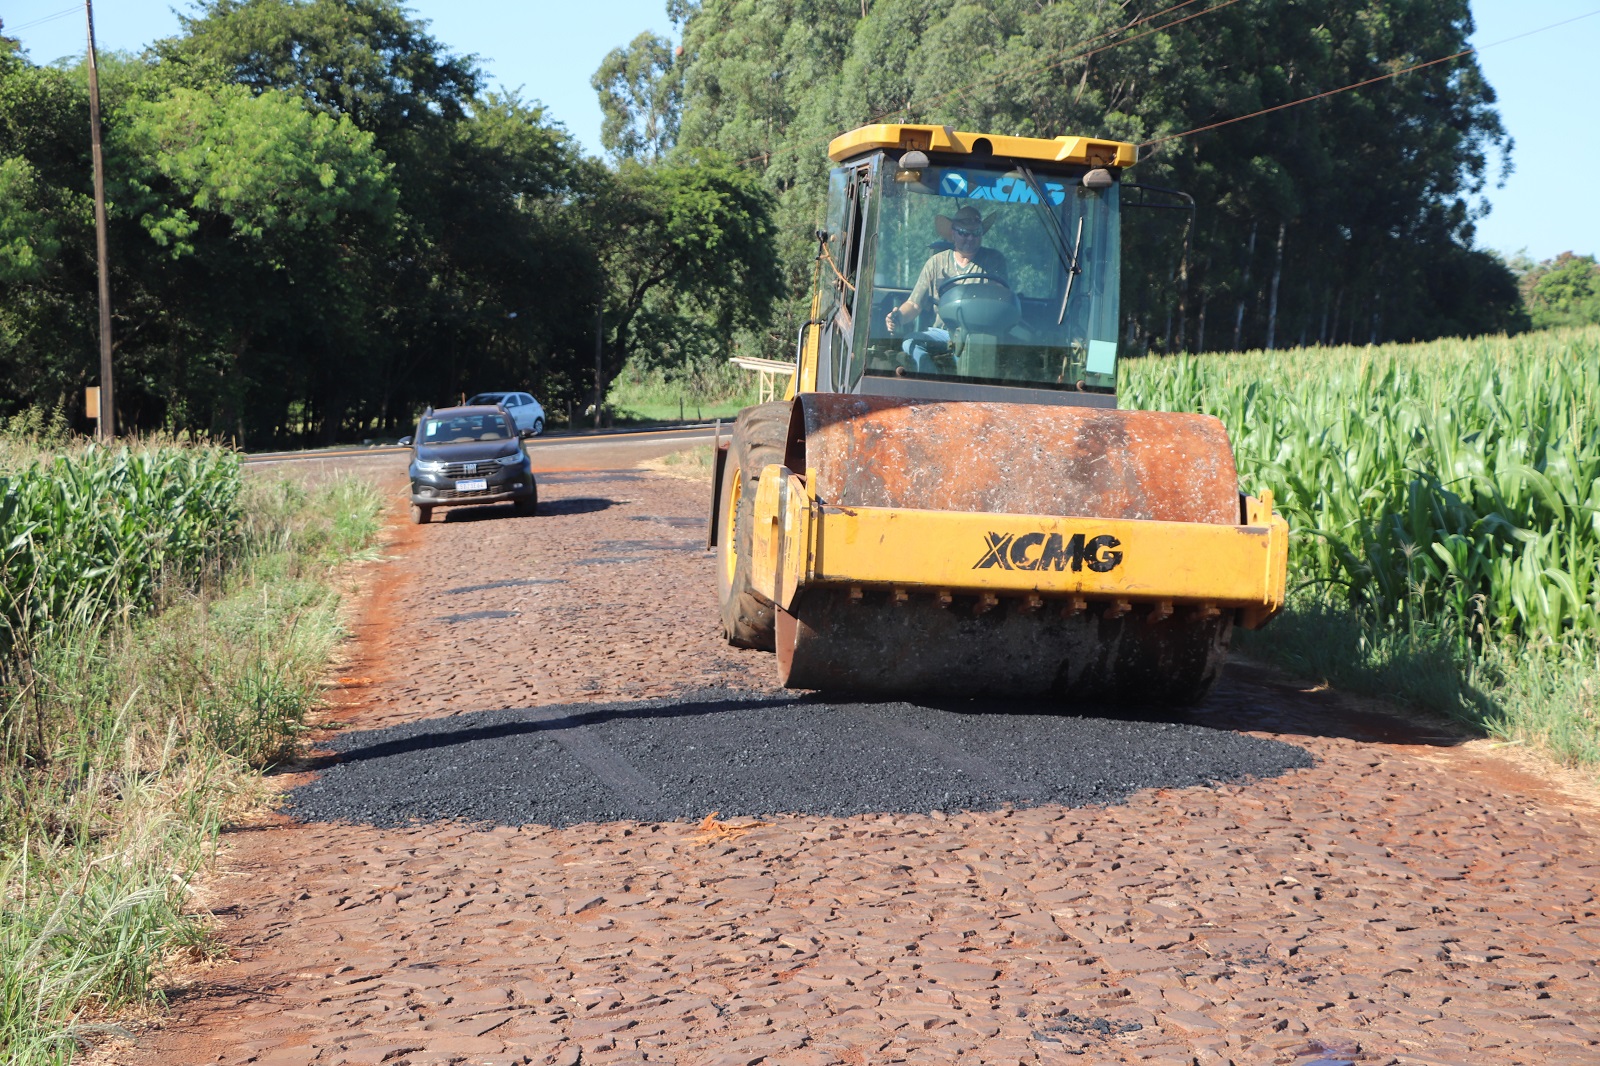 Programa de melhorias em estradas de Marechal Cândido Rondon: saiba mais! 🛣️🚧